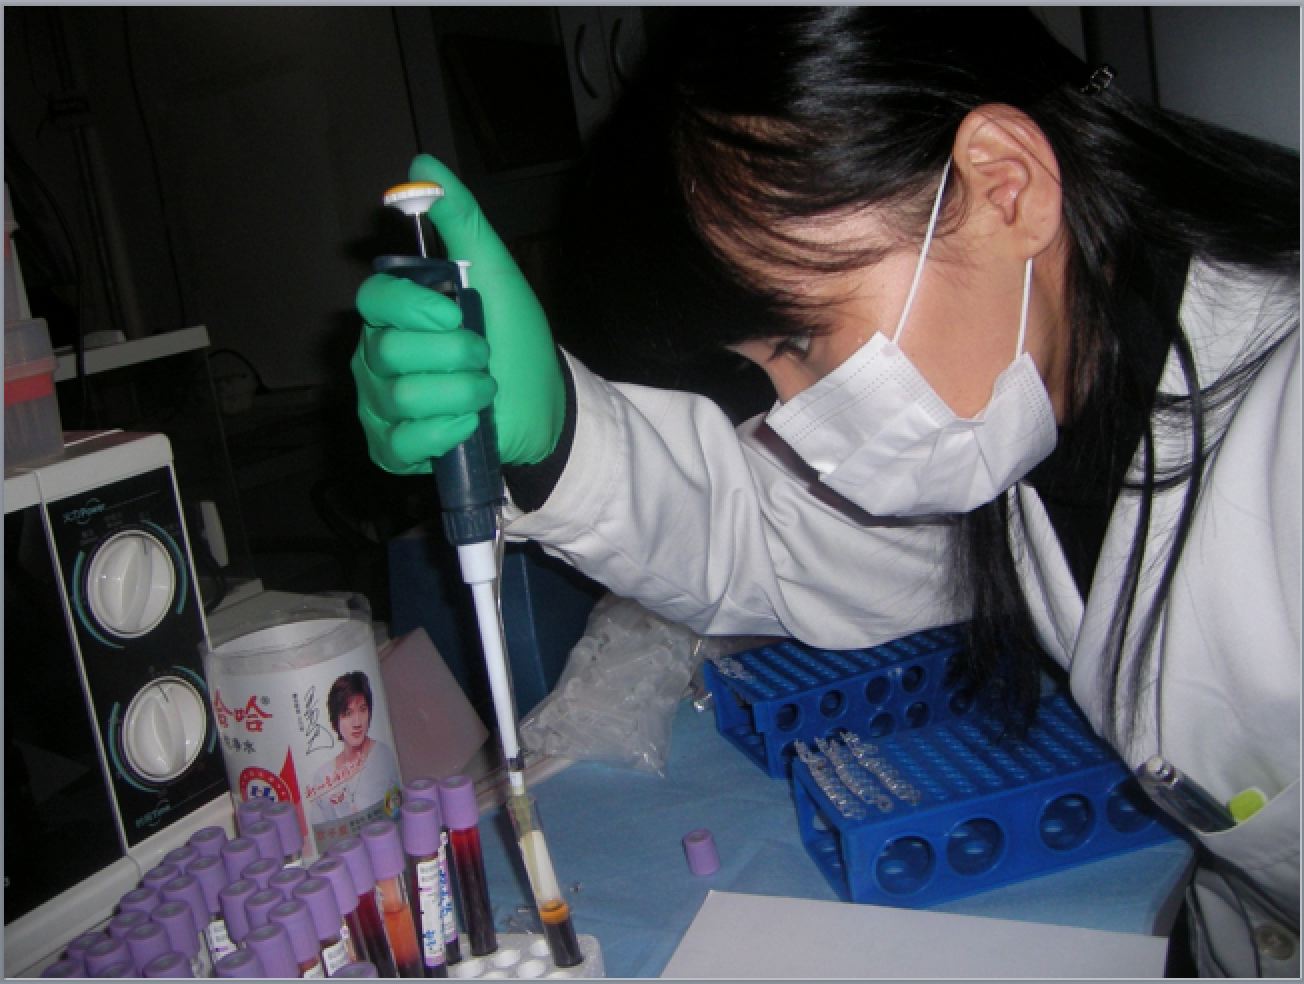 蒙古国青年访问学者在研究室工作